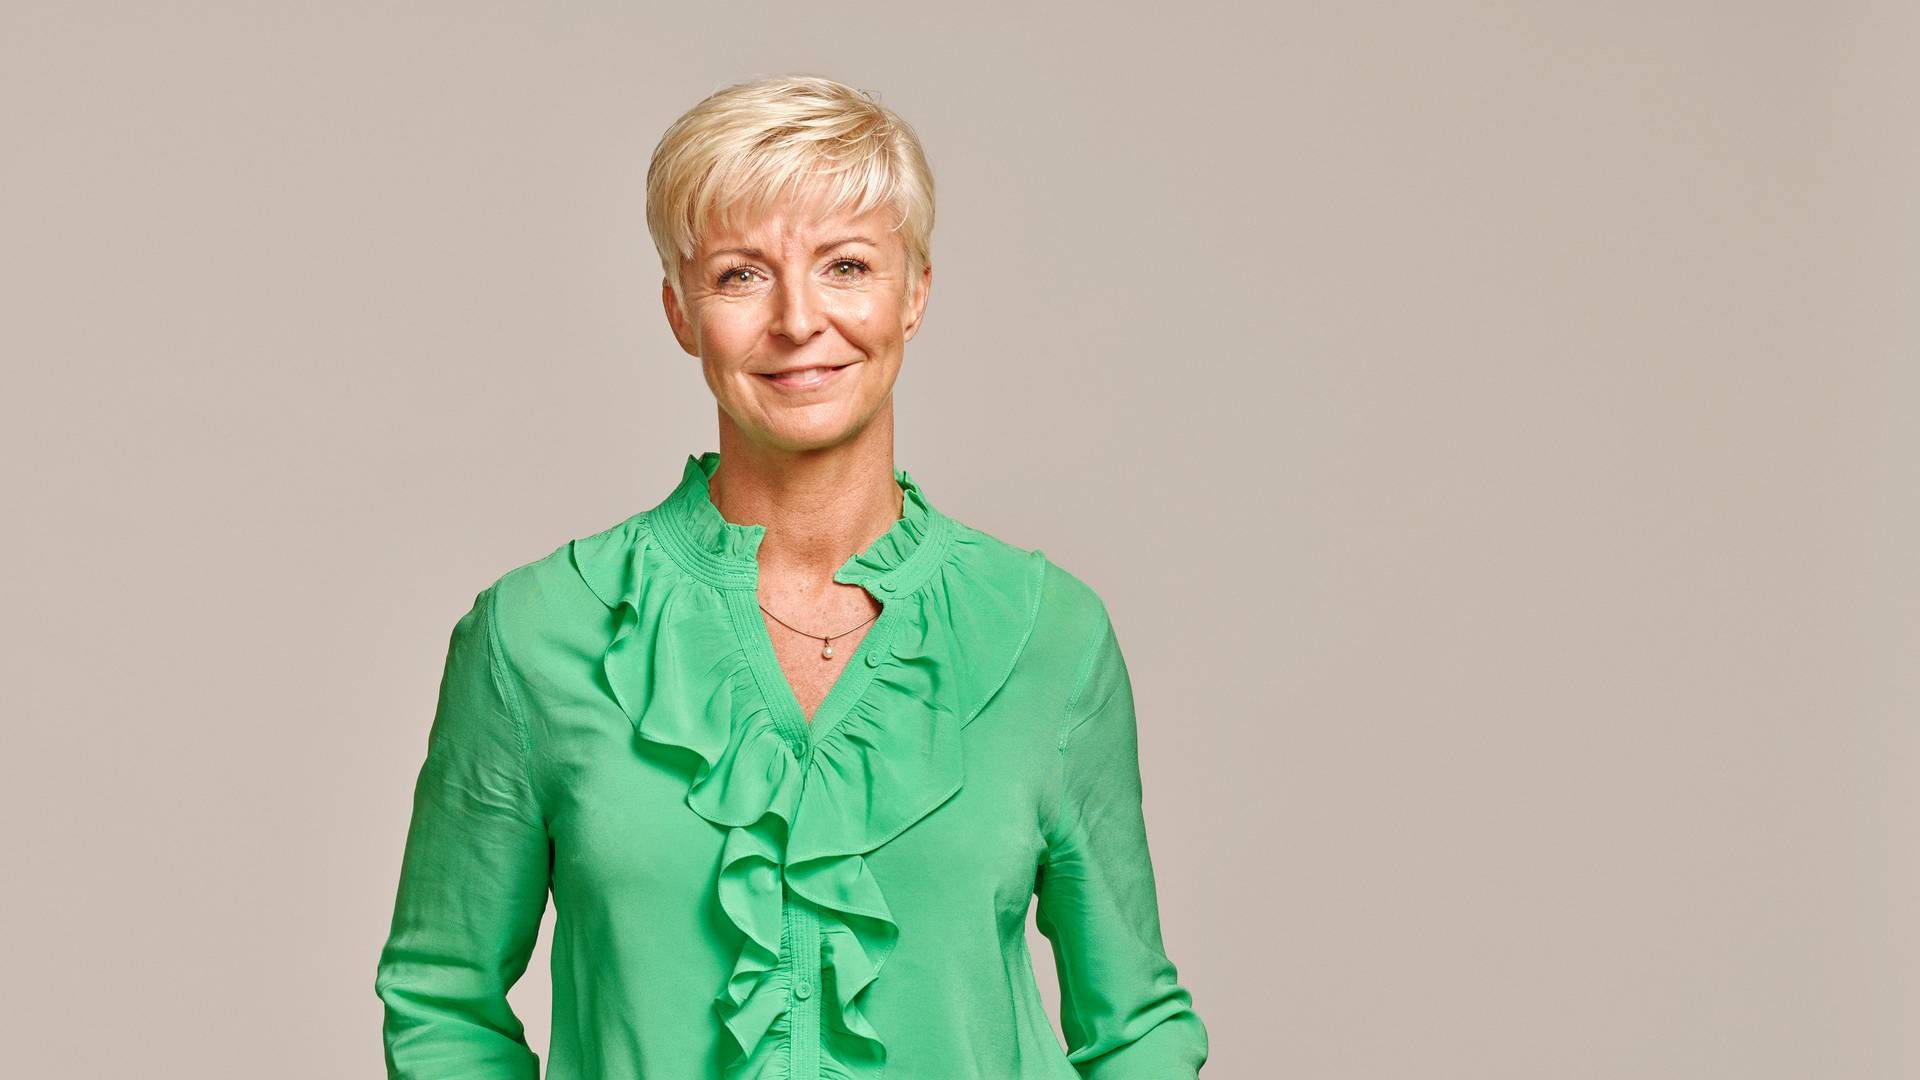 Janne Bjaaland blev i foråret 2022 HR-direktør i Velliv. Tidligere har hun bl.a. arbejdet med kundeservice og salg. | Foto: Pr / Velliv